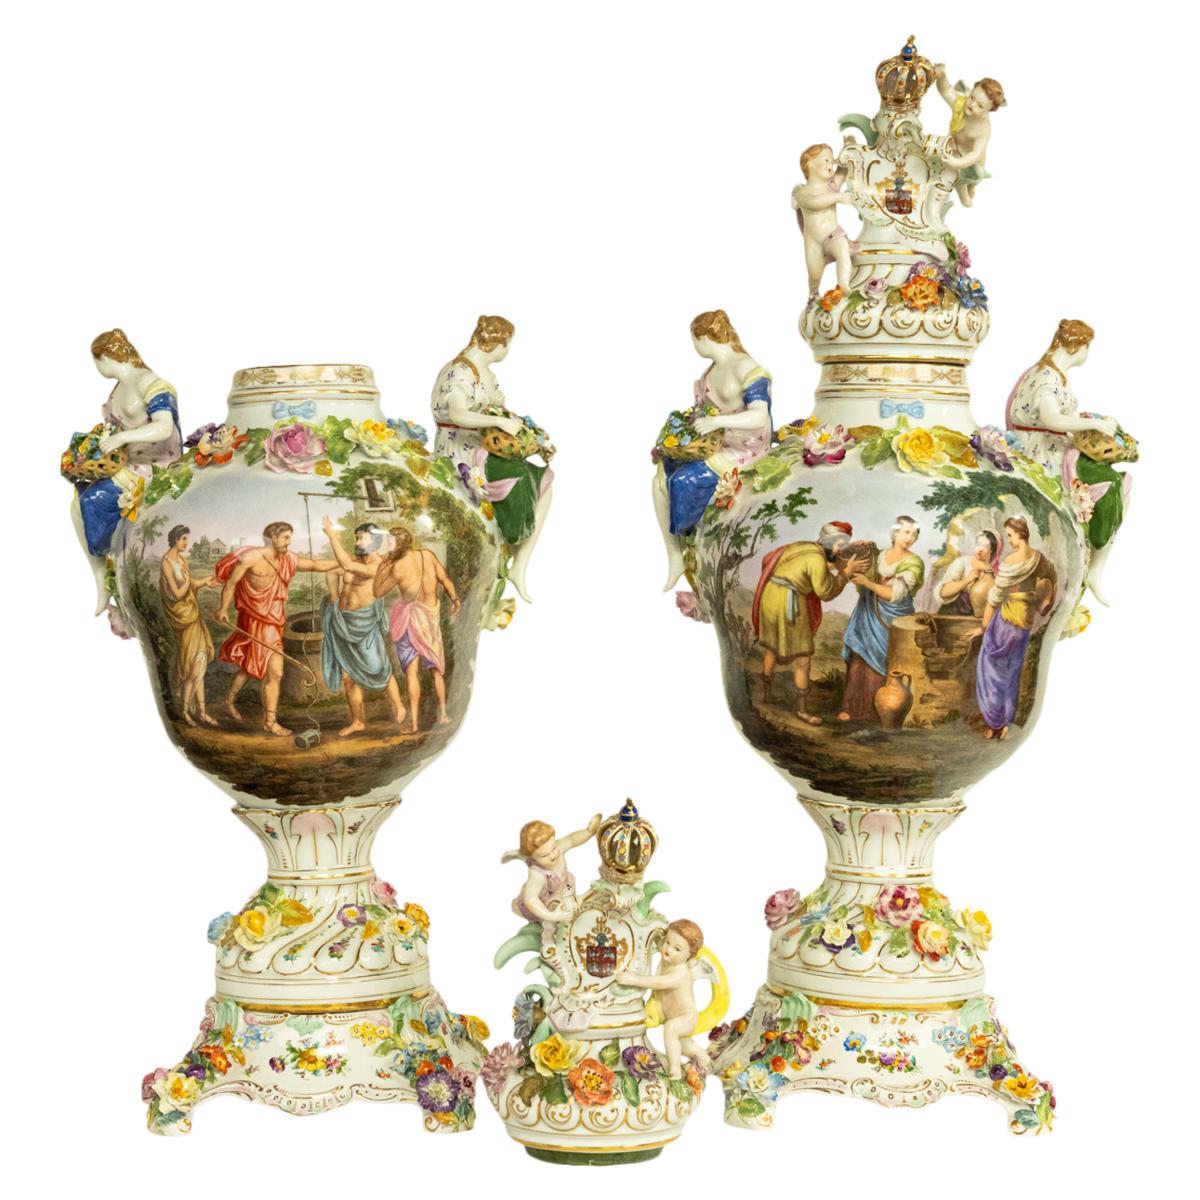 Ein sehr schönes und monumentales Paar Porzellan-Deckelurnen des späten 19. Jahrhunderts auf Sockeln von Carl Thieme (Potschappel) um 1880.
Die Urnen bestehen aus drei Teilen und sind sehr reich verziert. Jeder Deckel hat einen vergoldeten Abschluss